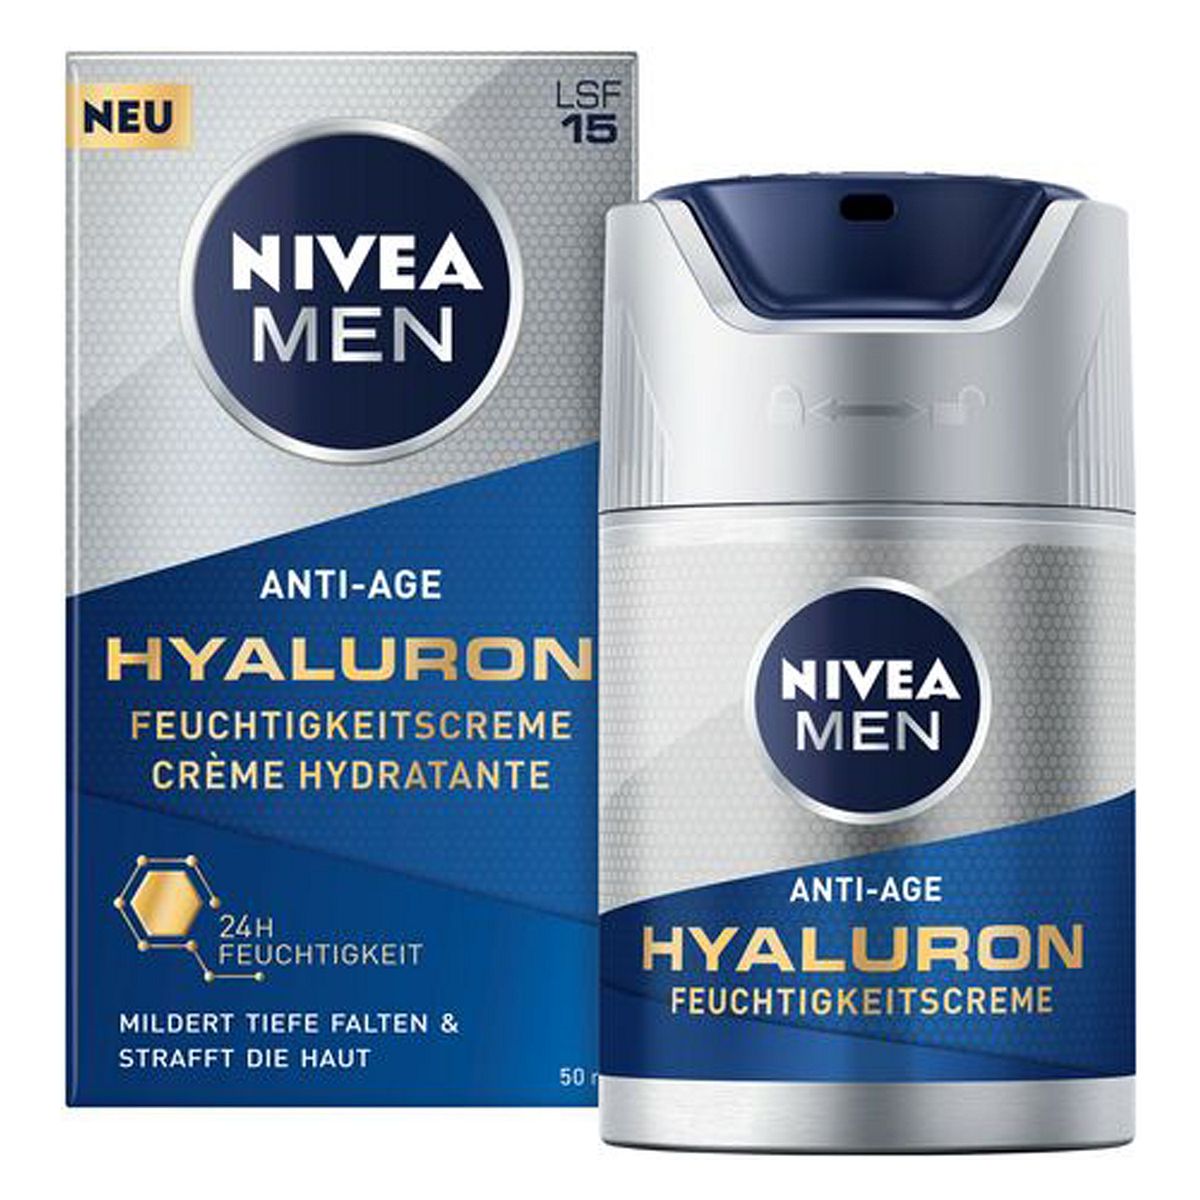 Nivea Men Anti-Age Hyaluron Feuchtigkeitscreme 